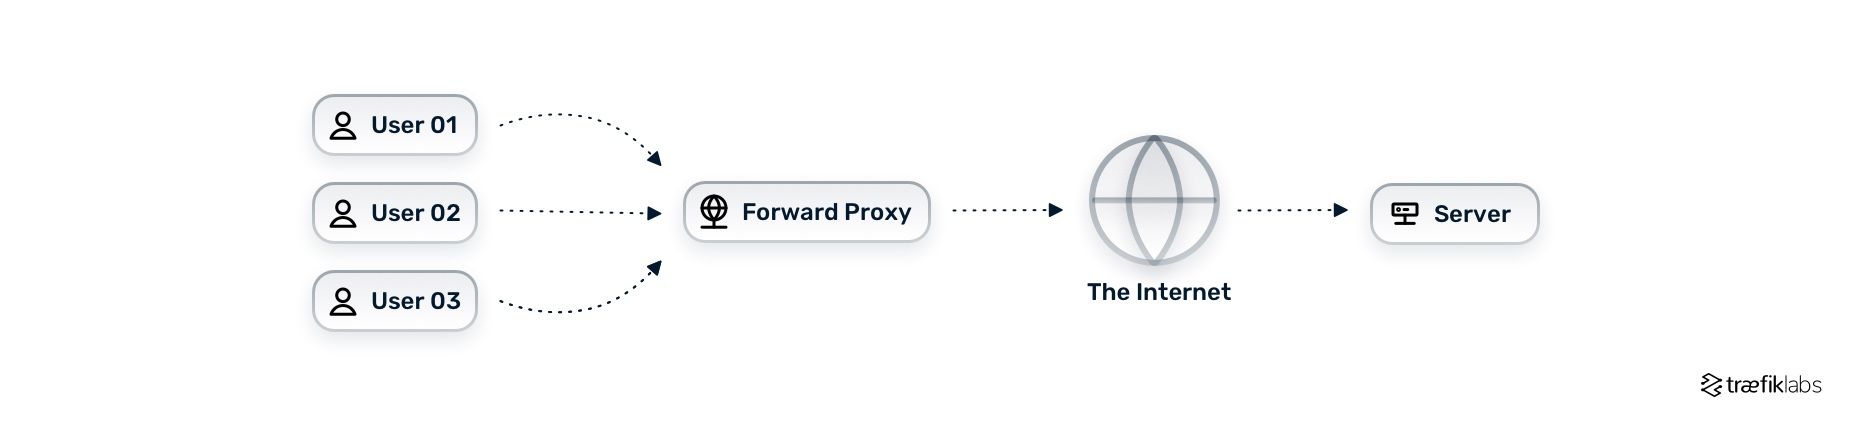 forward proxy architecture